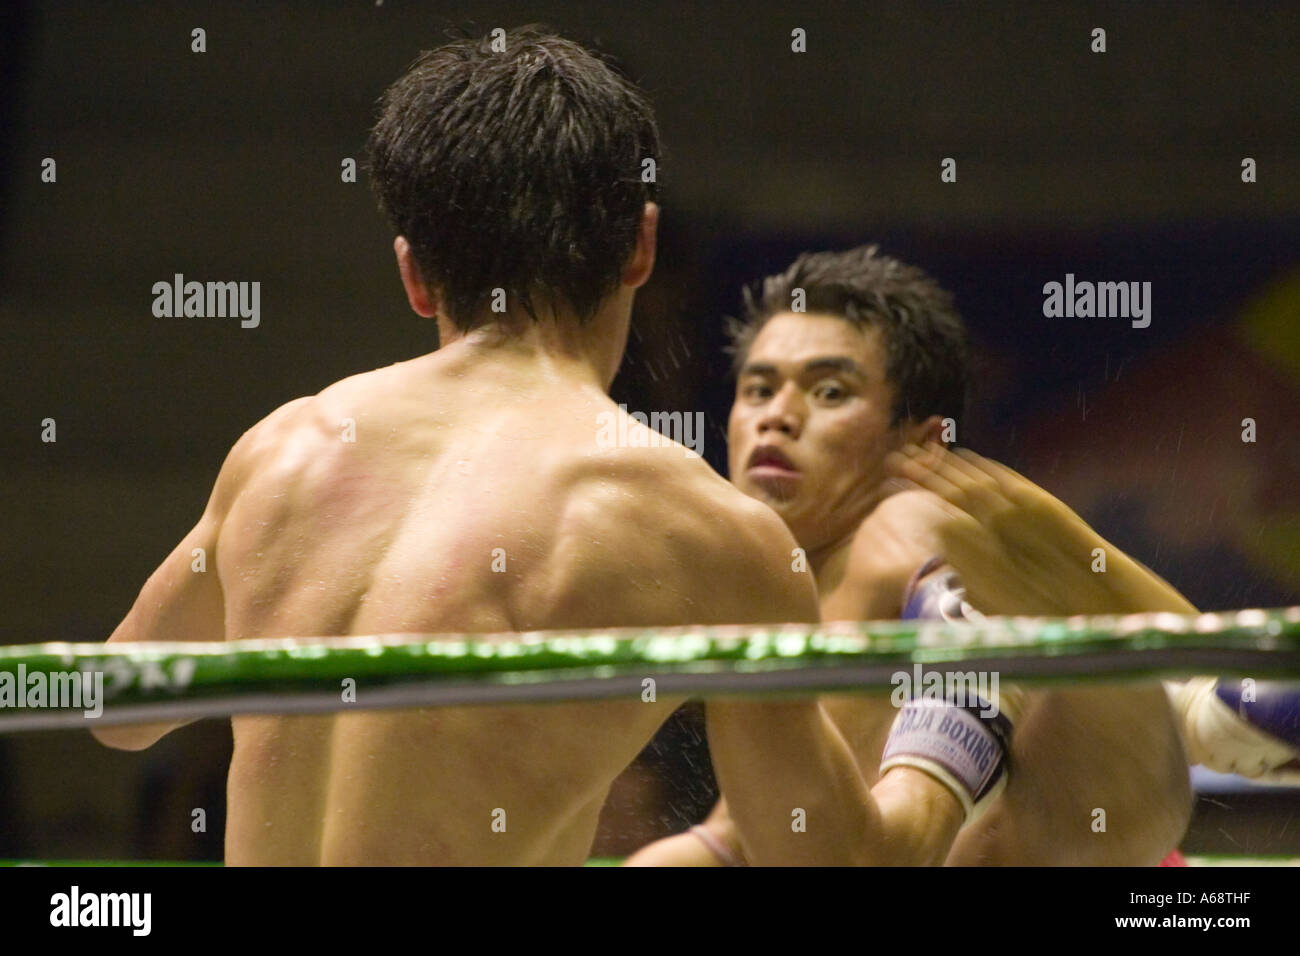 Le Muay Thai - Kick in motion Banque D'Images